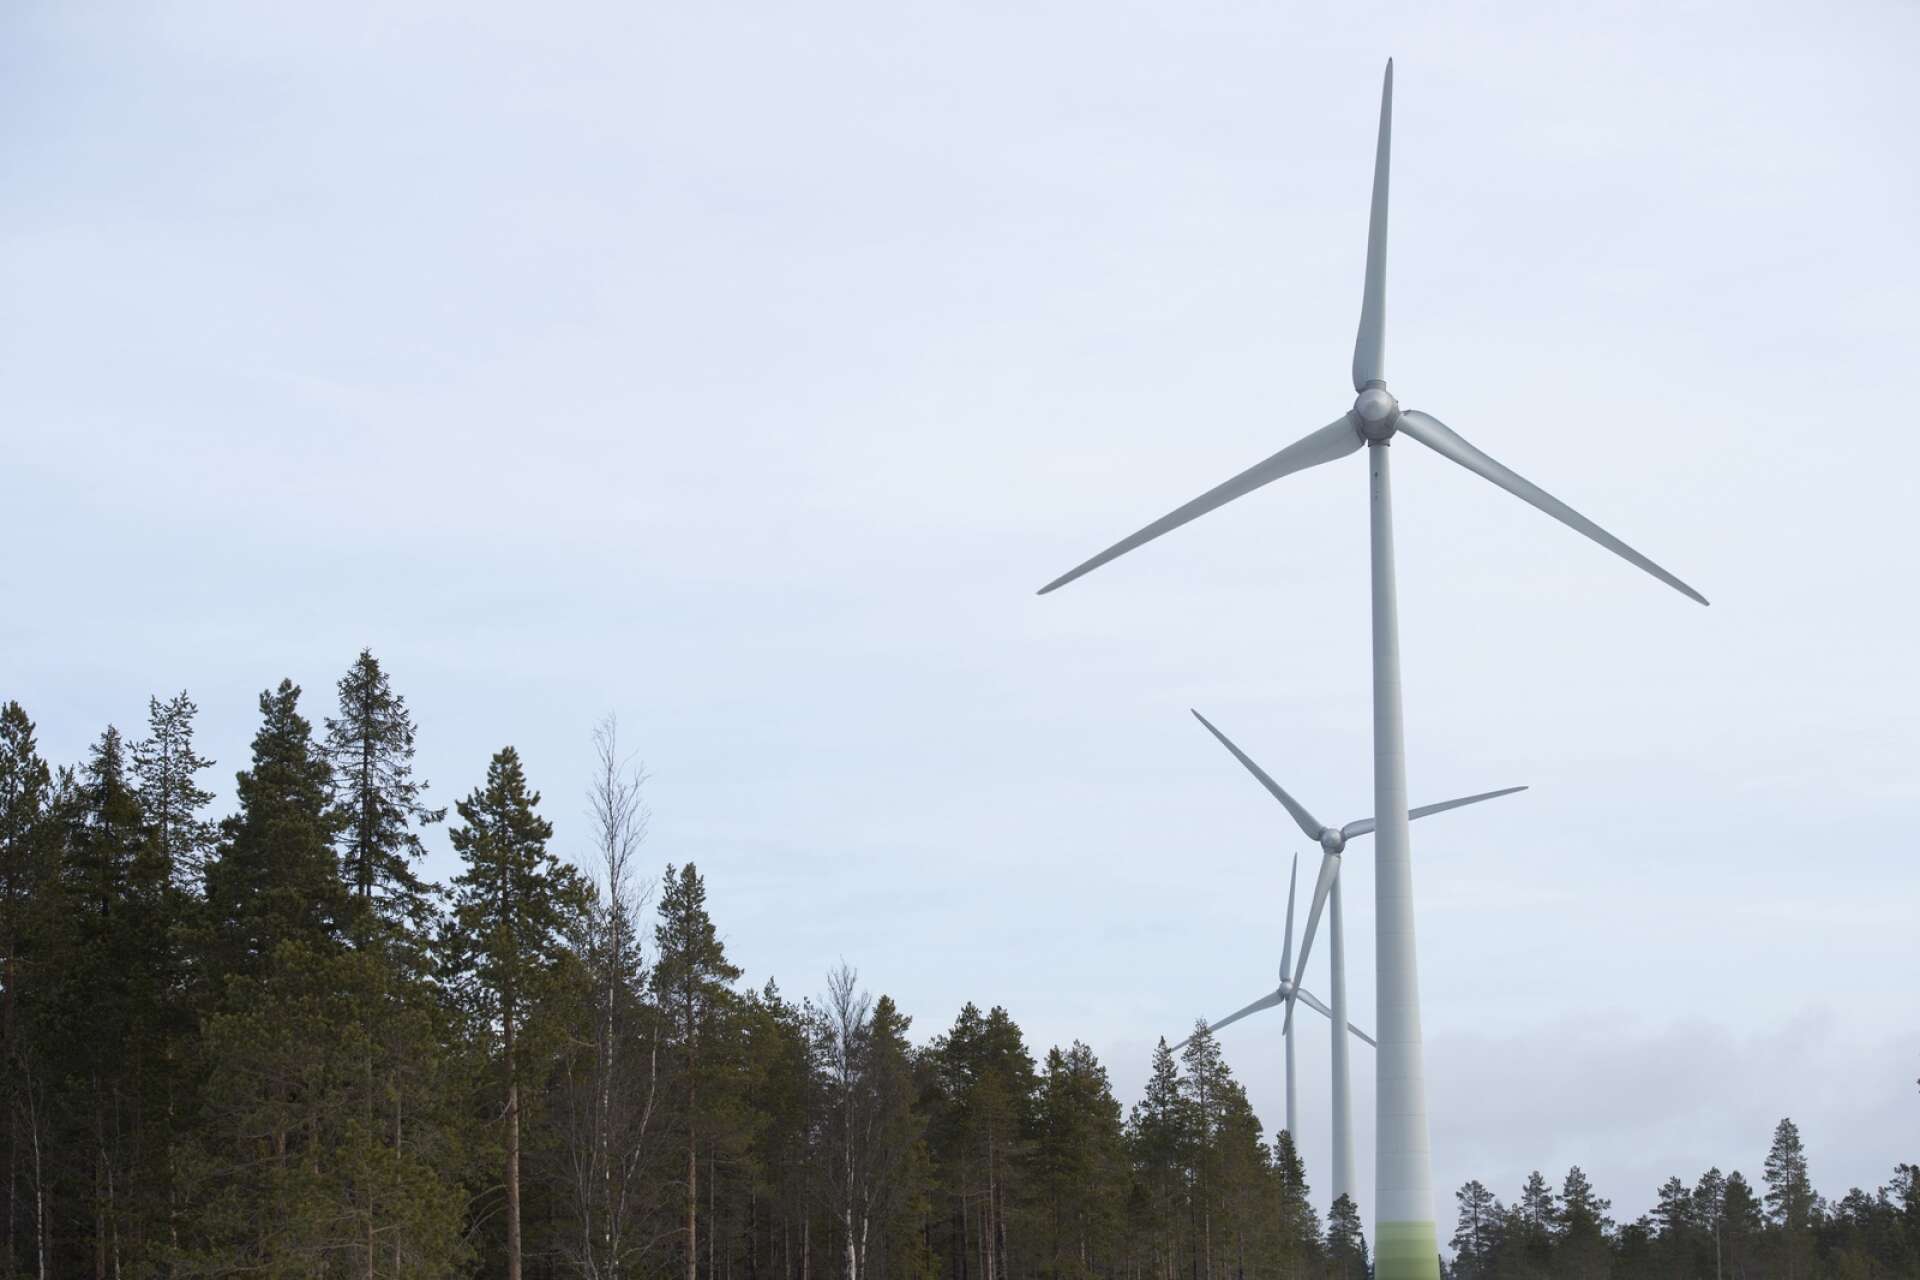 Länge har kommuner efterfrågat ett incitament av något slag för att öka acceptansen för vindkraftsutbyggnad, skriver Evelina Fahlesson med flera.